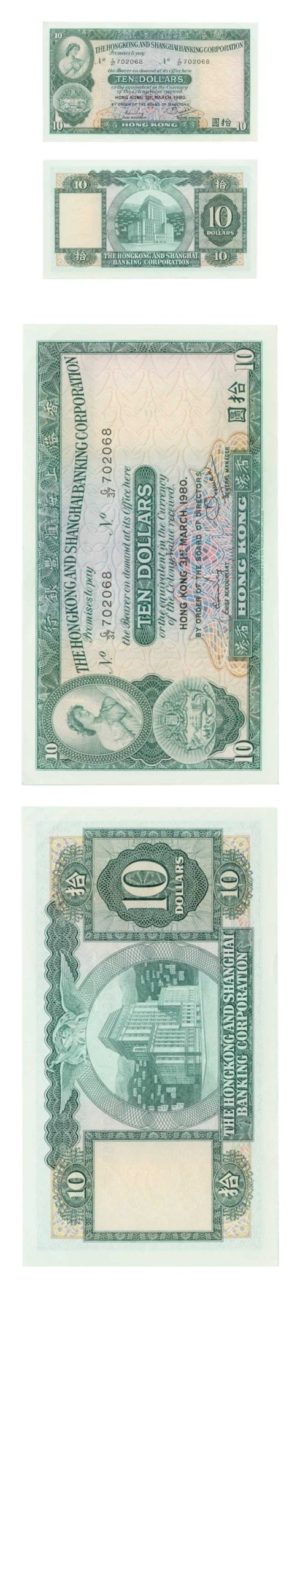 Hong Kong - The Hong Kong and Shanghai Banking Corporation - $10 - 1980 - About Uncirculated